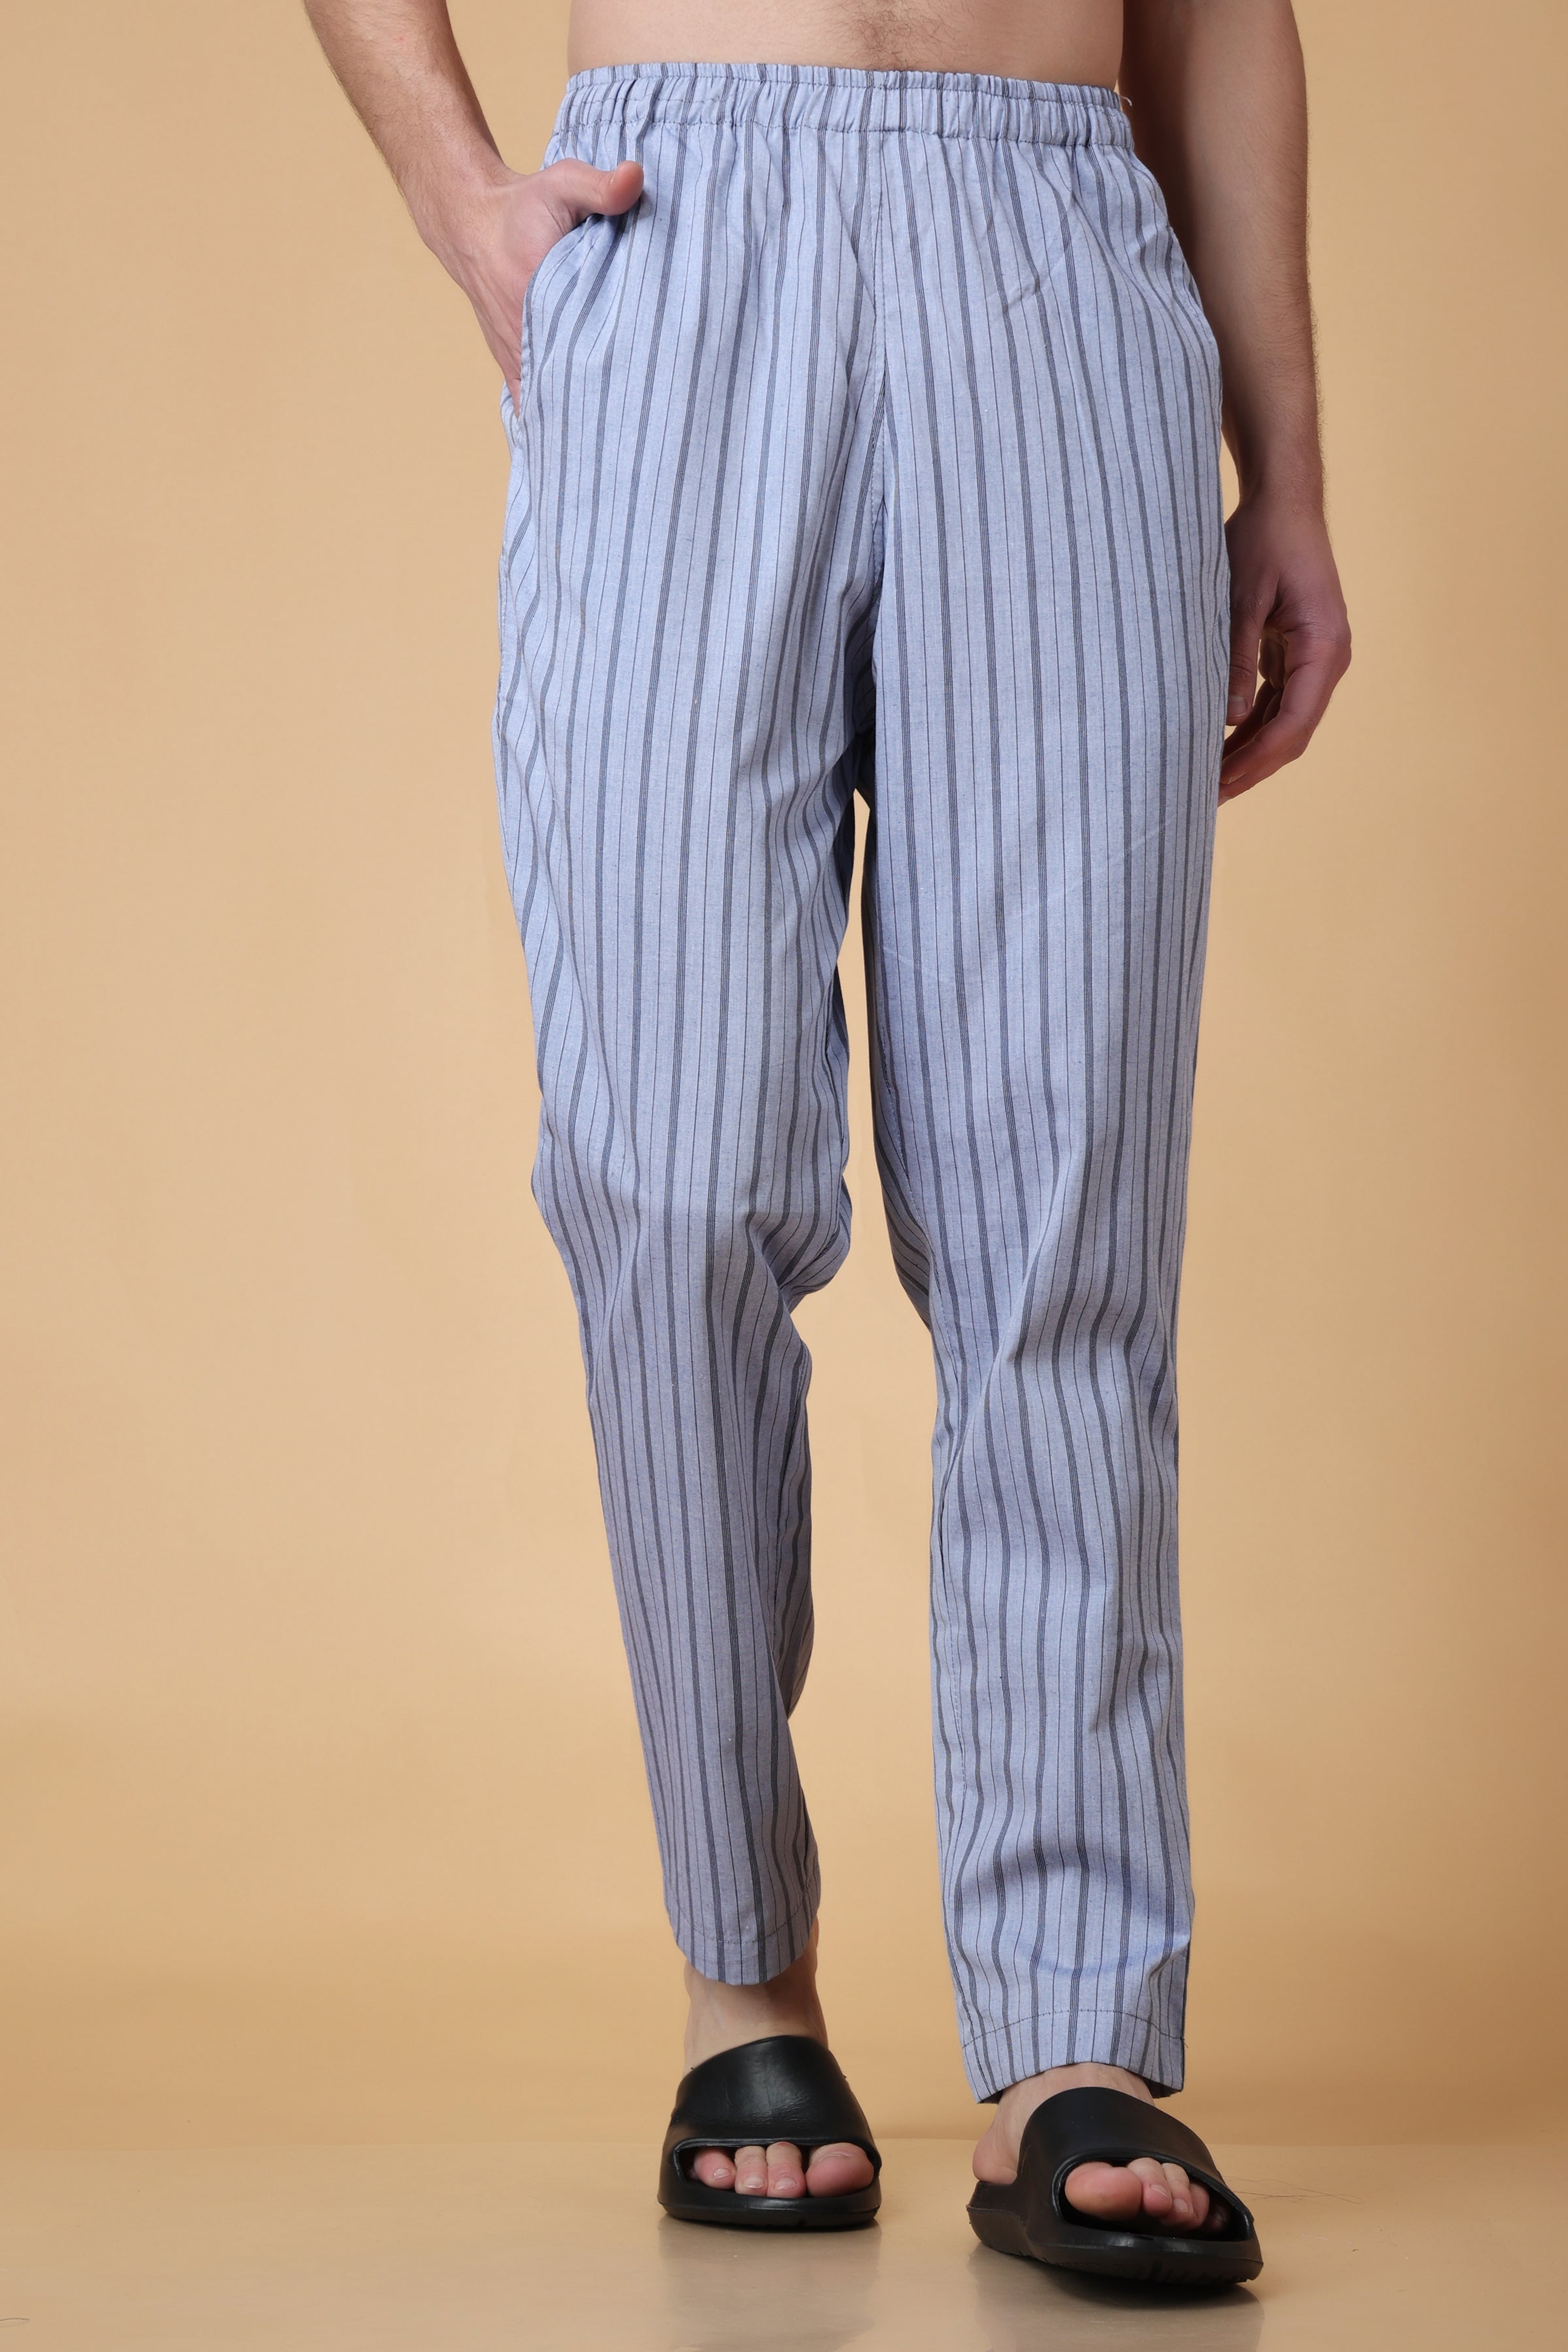 Danny Duncan Pajama Pants